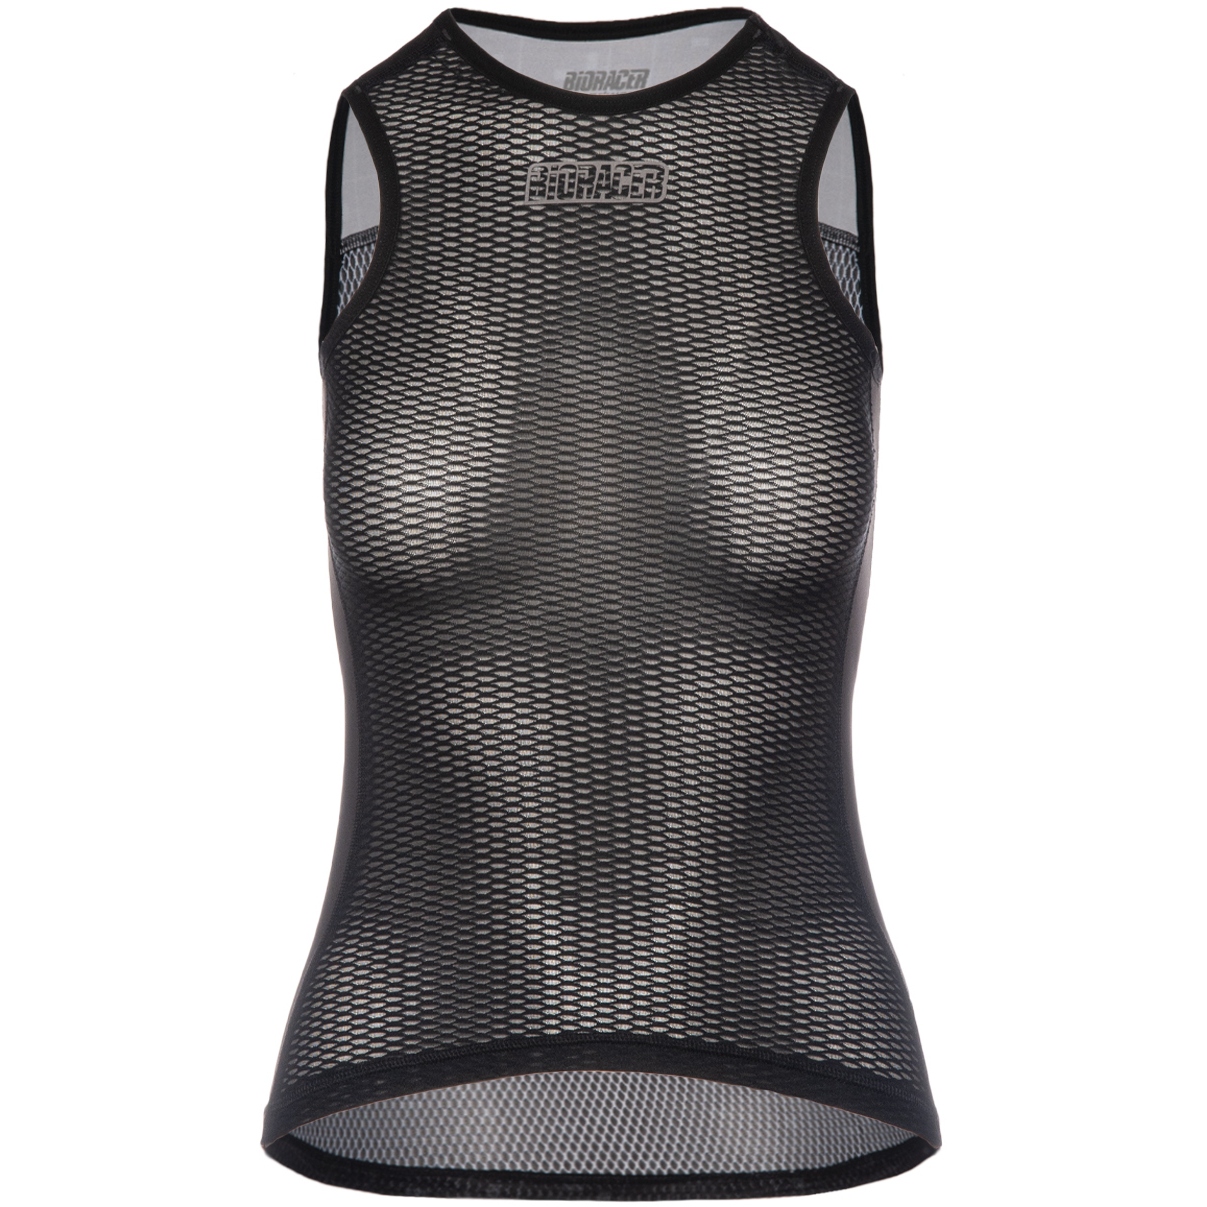 Produktbild von Bioracer Breeze Ärmelloses Damen Unterhemd - schwarz